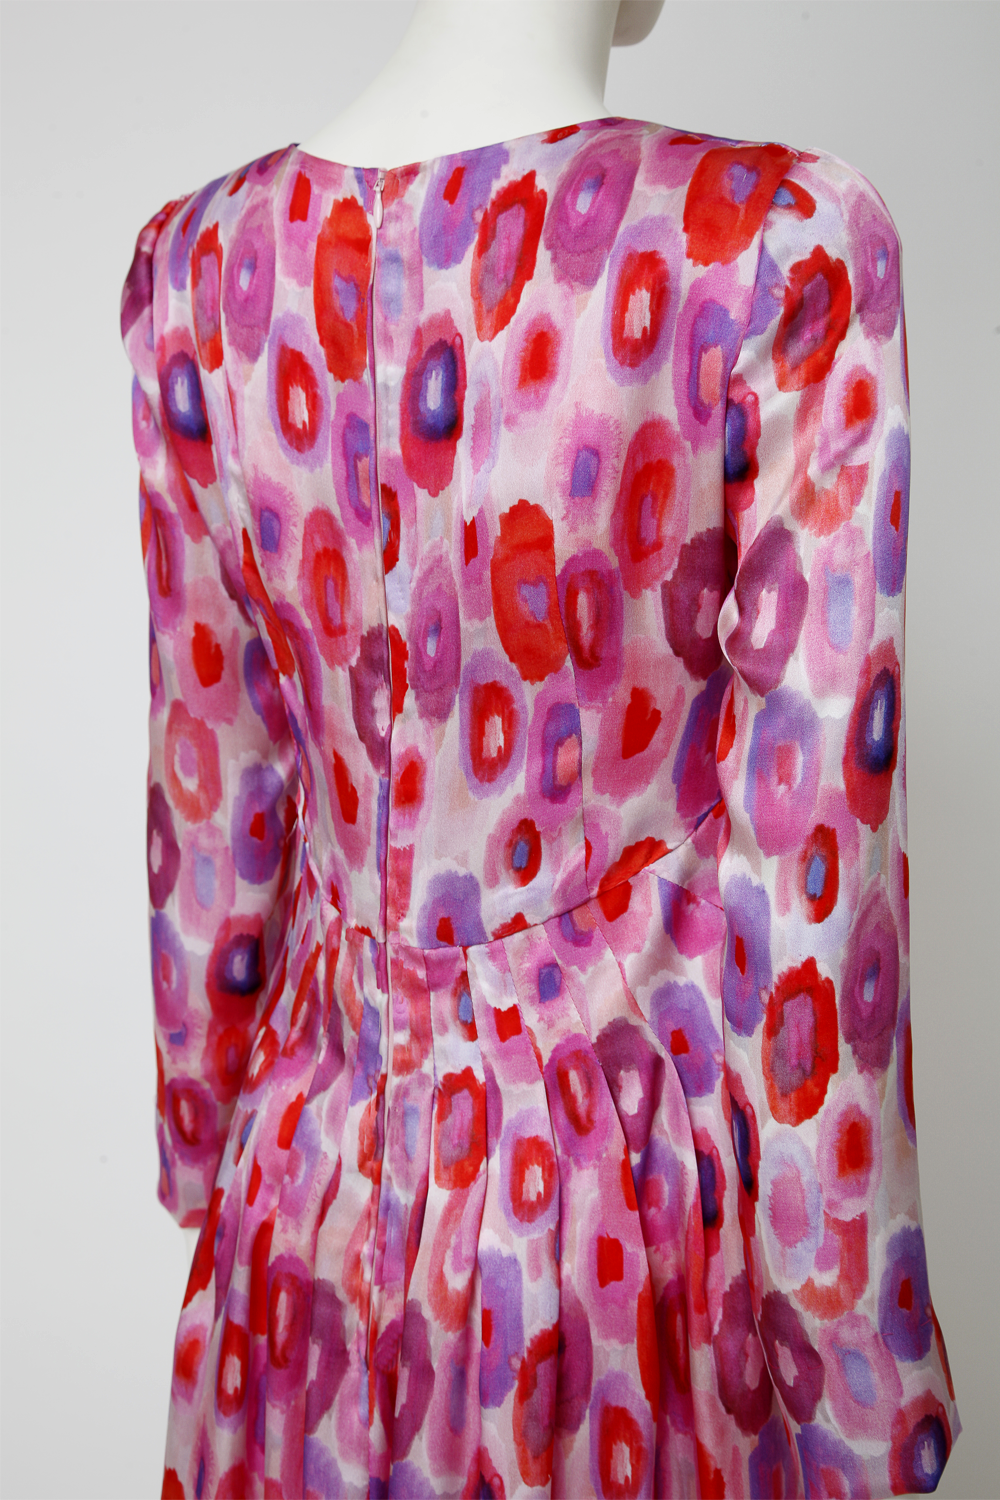 Pinkes Seidenkleid mit einem farbenfrohen Muster